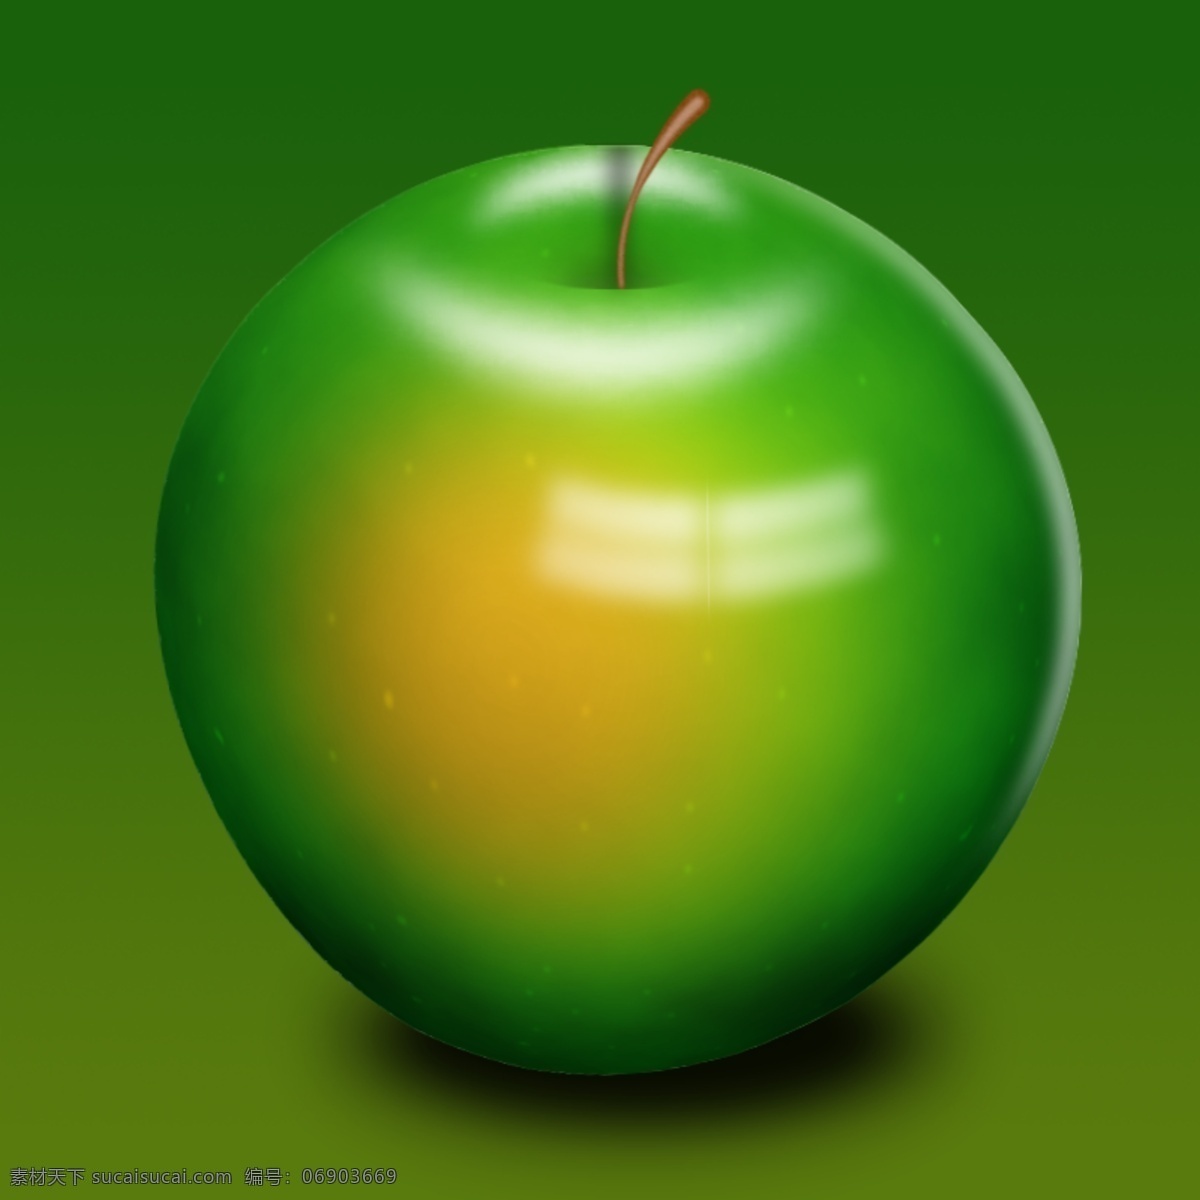 青苹果 苹果 水果 青色 绿色 寂寞 3d 立体 模型 3d设计 3d作品